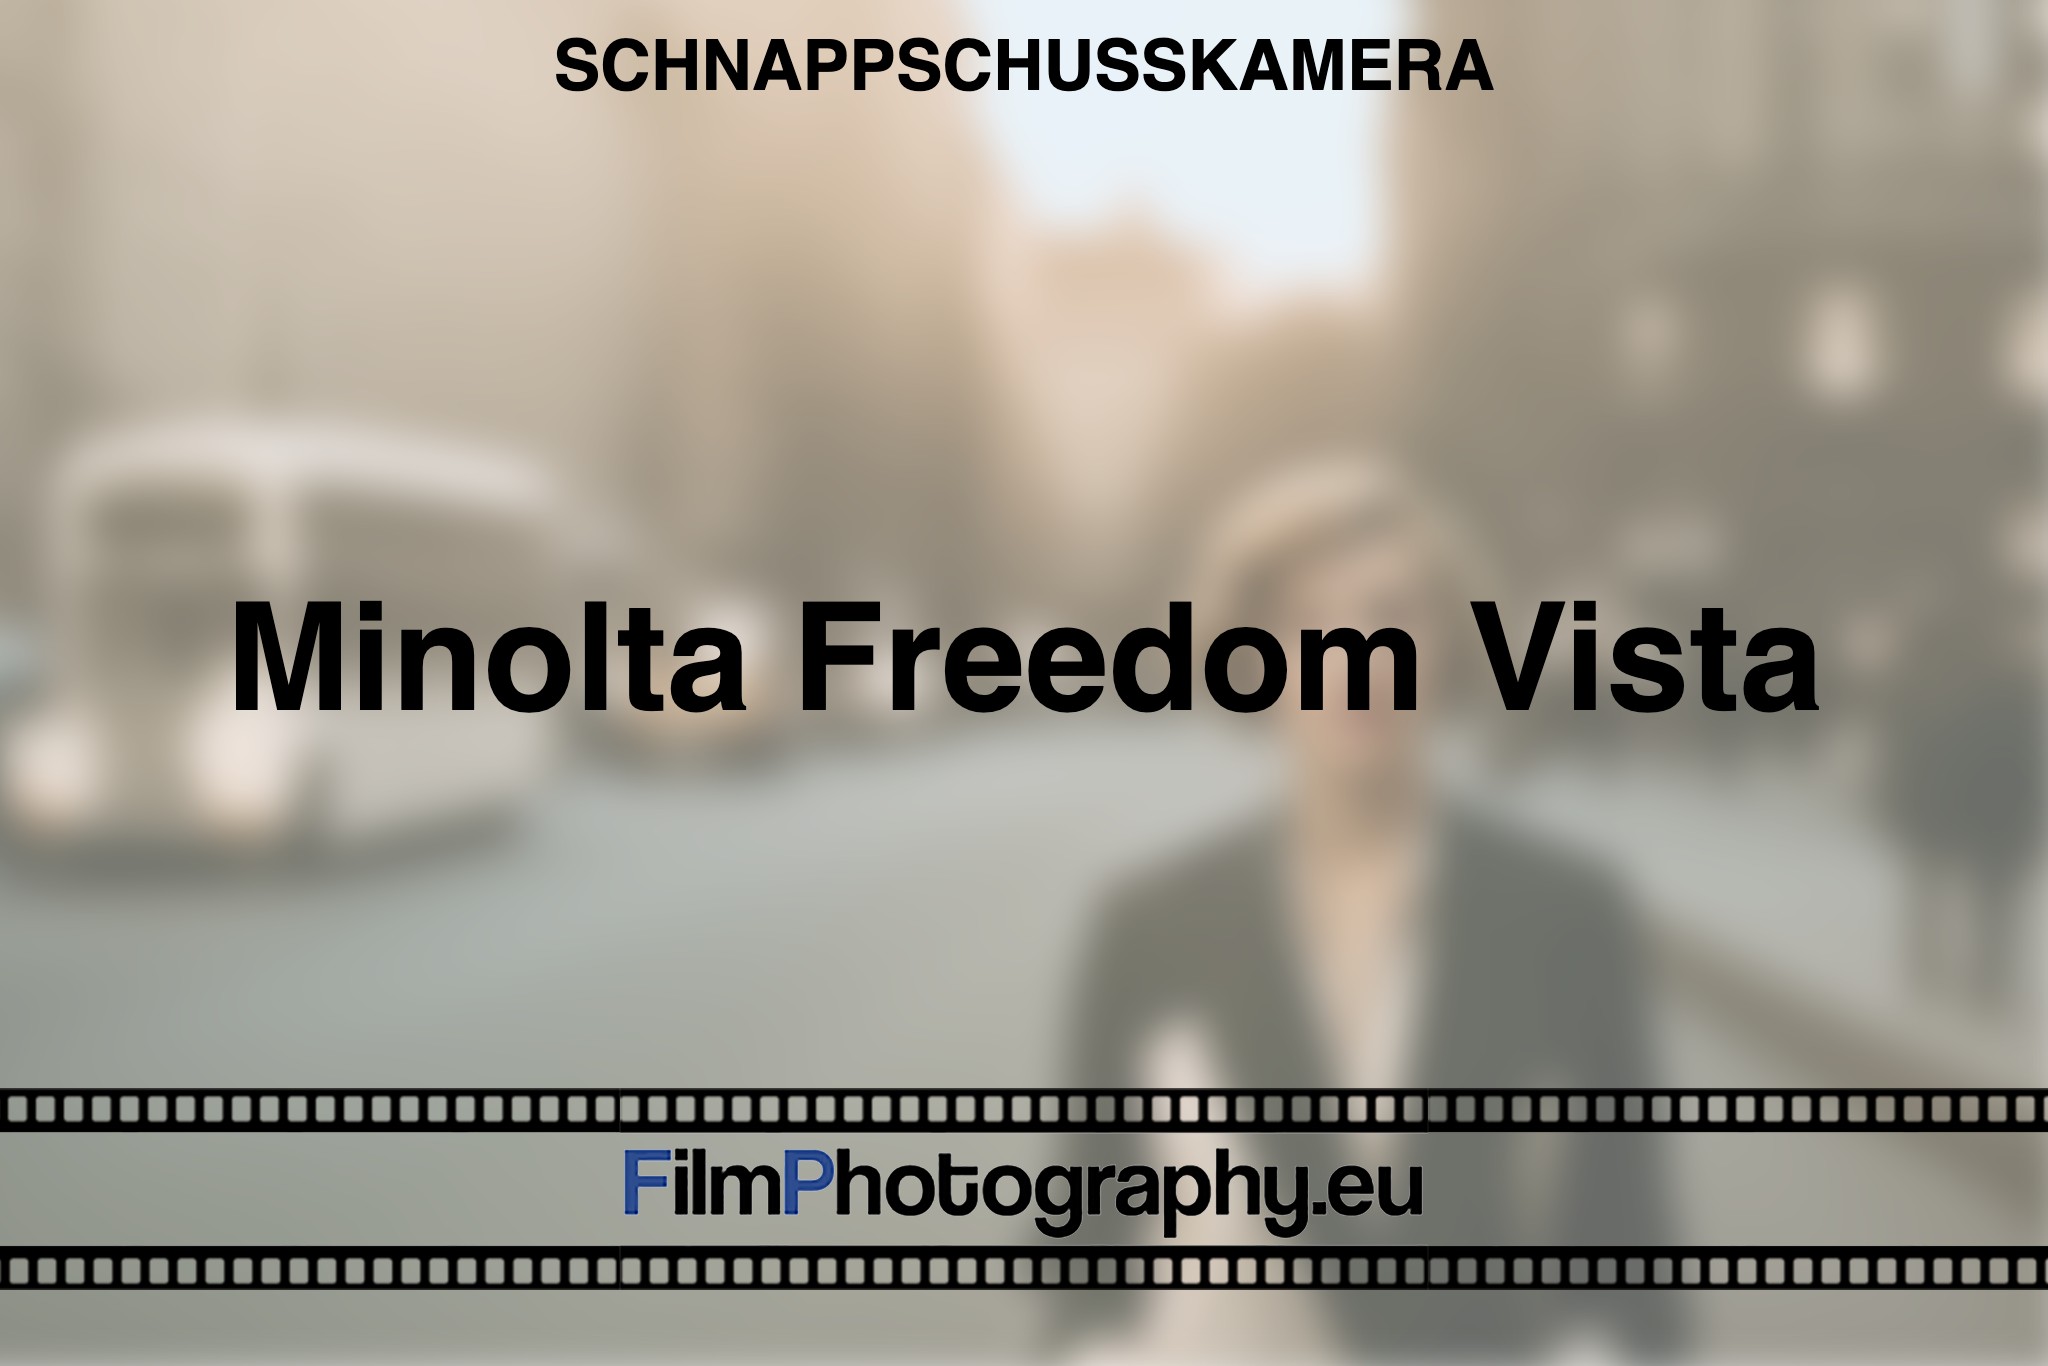 minolta-freedom-vista-schnappschusskamera-bnv